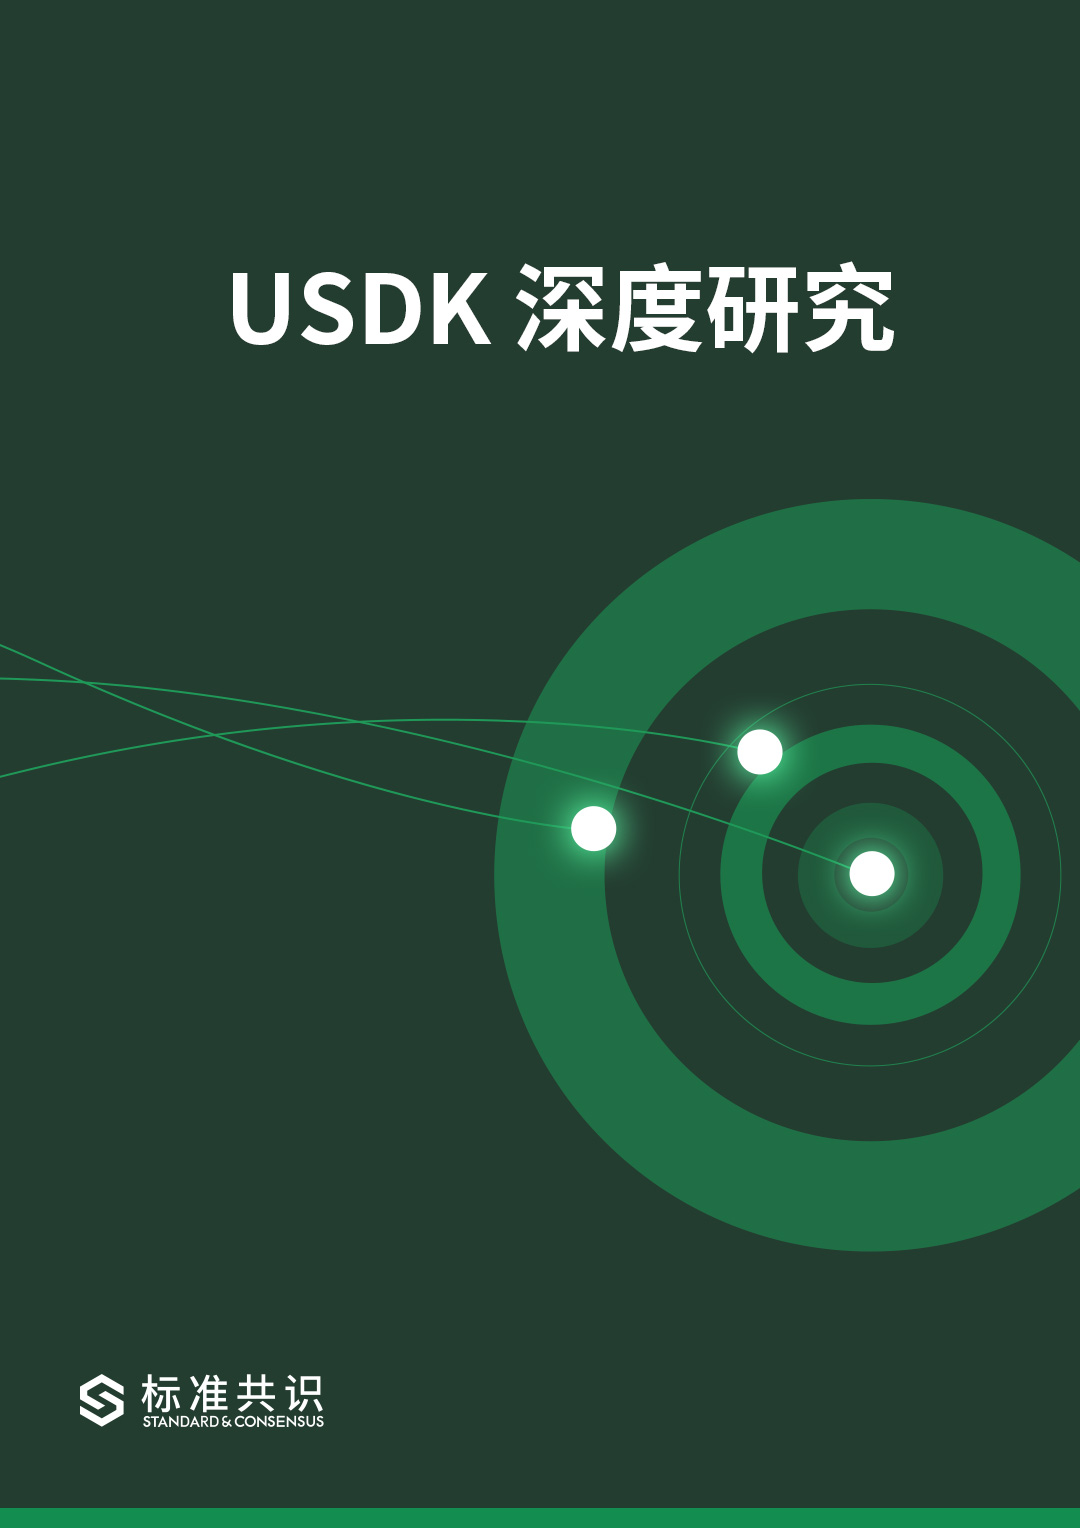 USDK 深度研究｜标准共识配图(1)